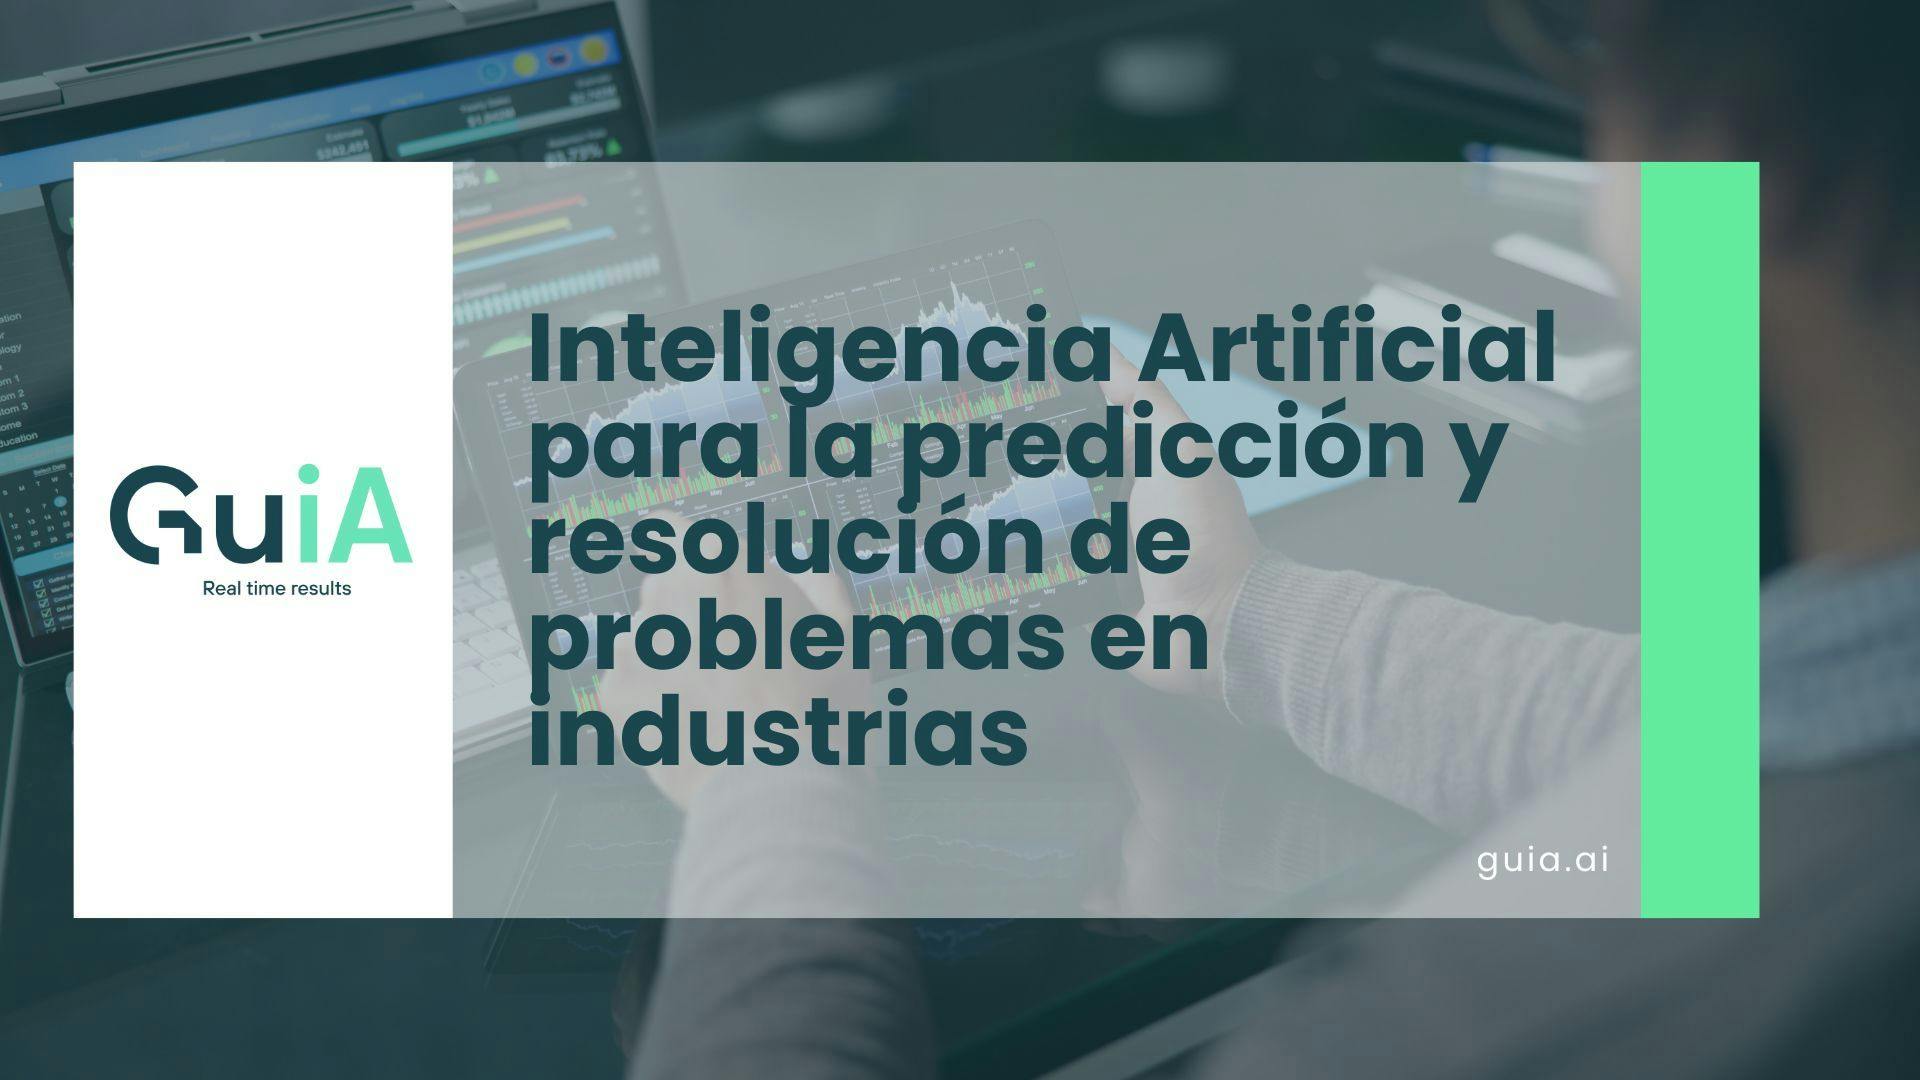 Inteligencia Artificial para la predicción, prevención y resolución de problemas en industrias